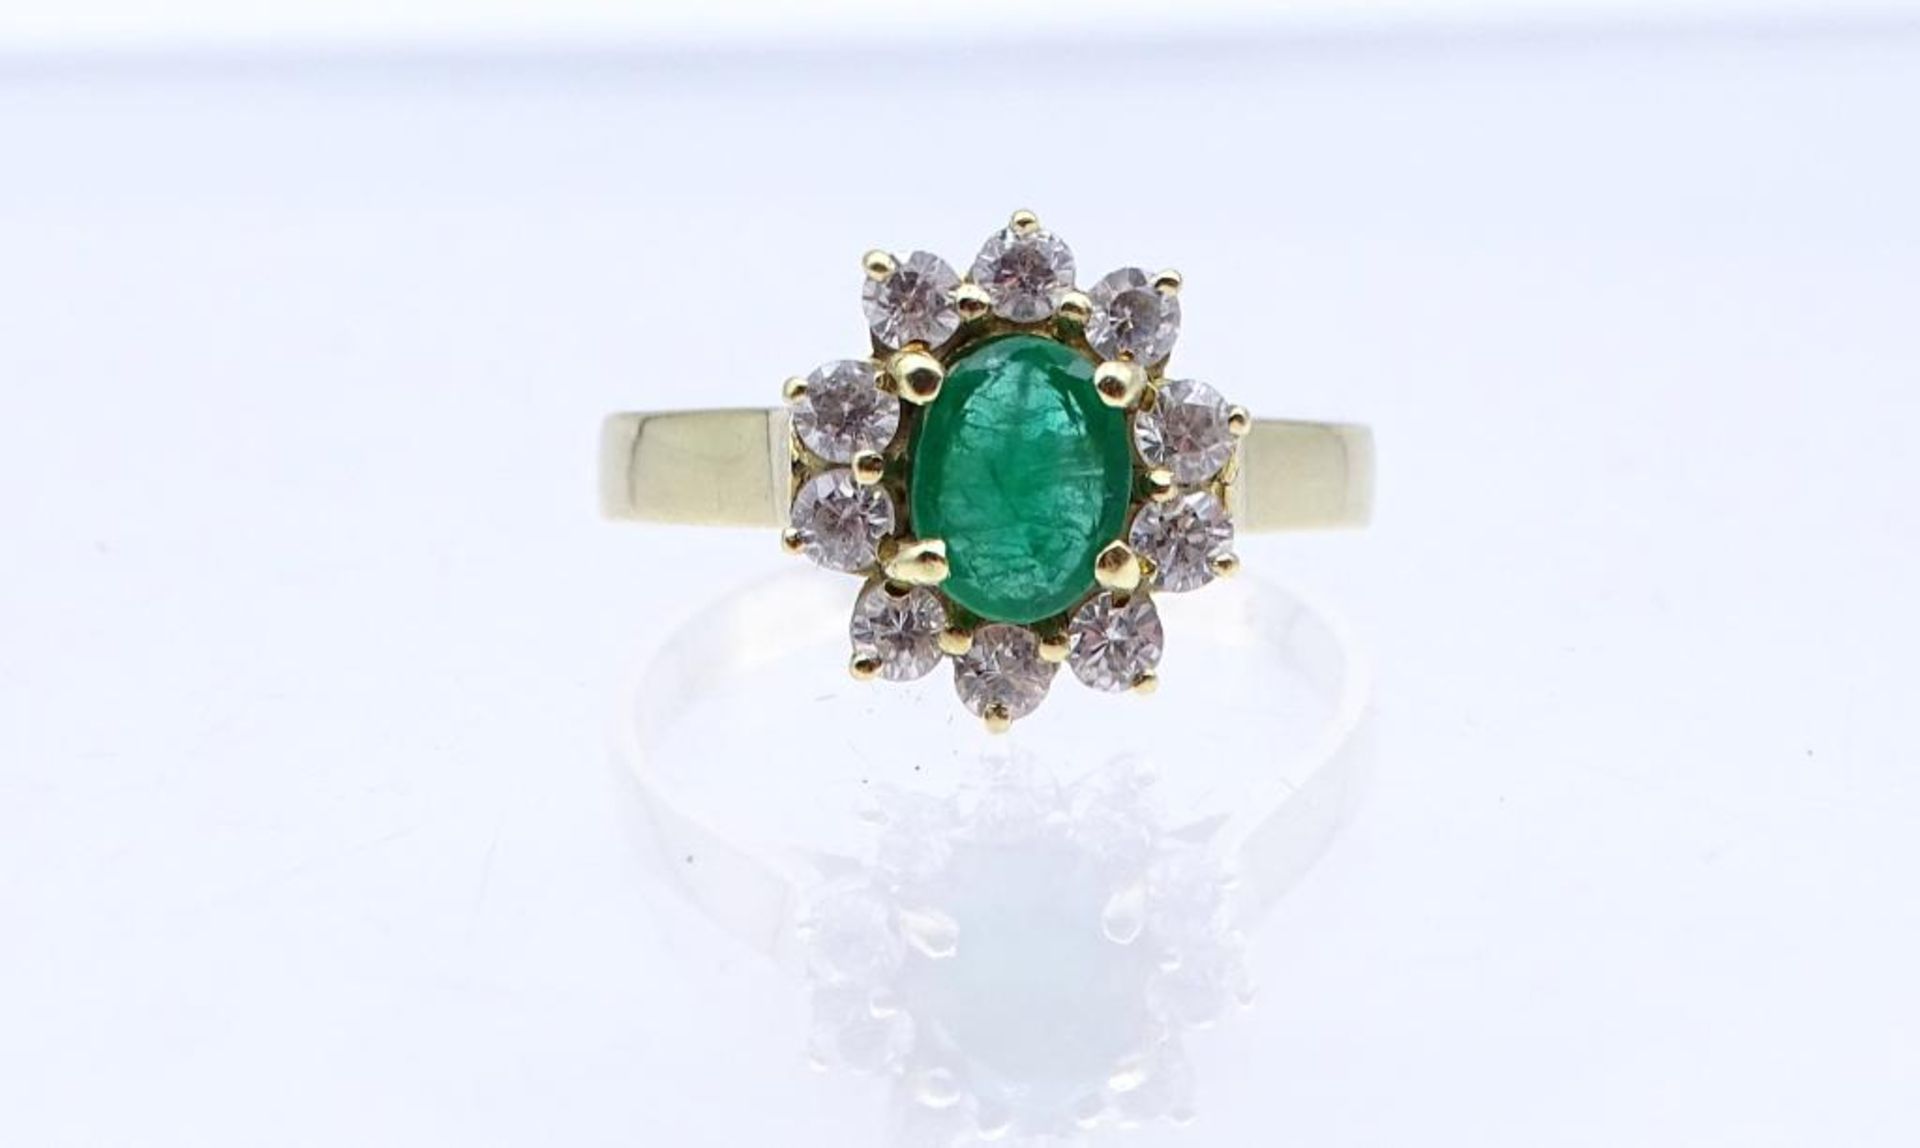 Smaragd-Zirkonia-Ring, GG 585/000, 3,40gr., RG 55- - -22.61 % buyer's premium on the hammer priceVAT